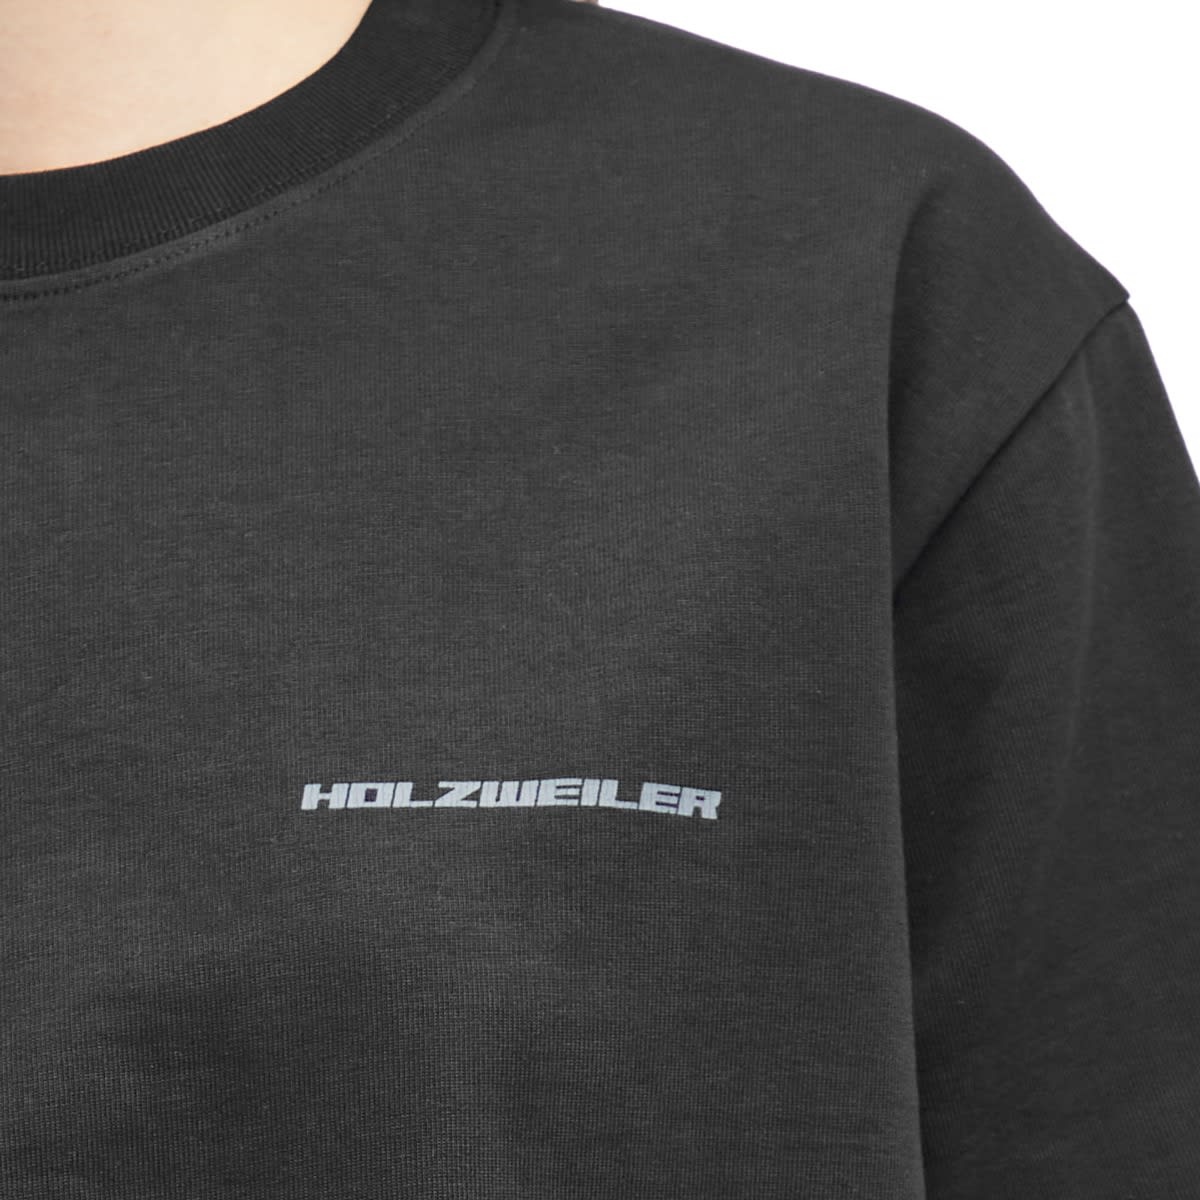 Holzweiler Kjerag T-Shirt - 5